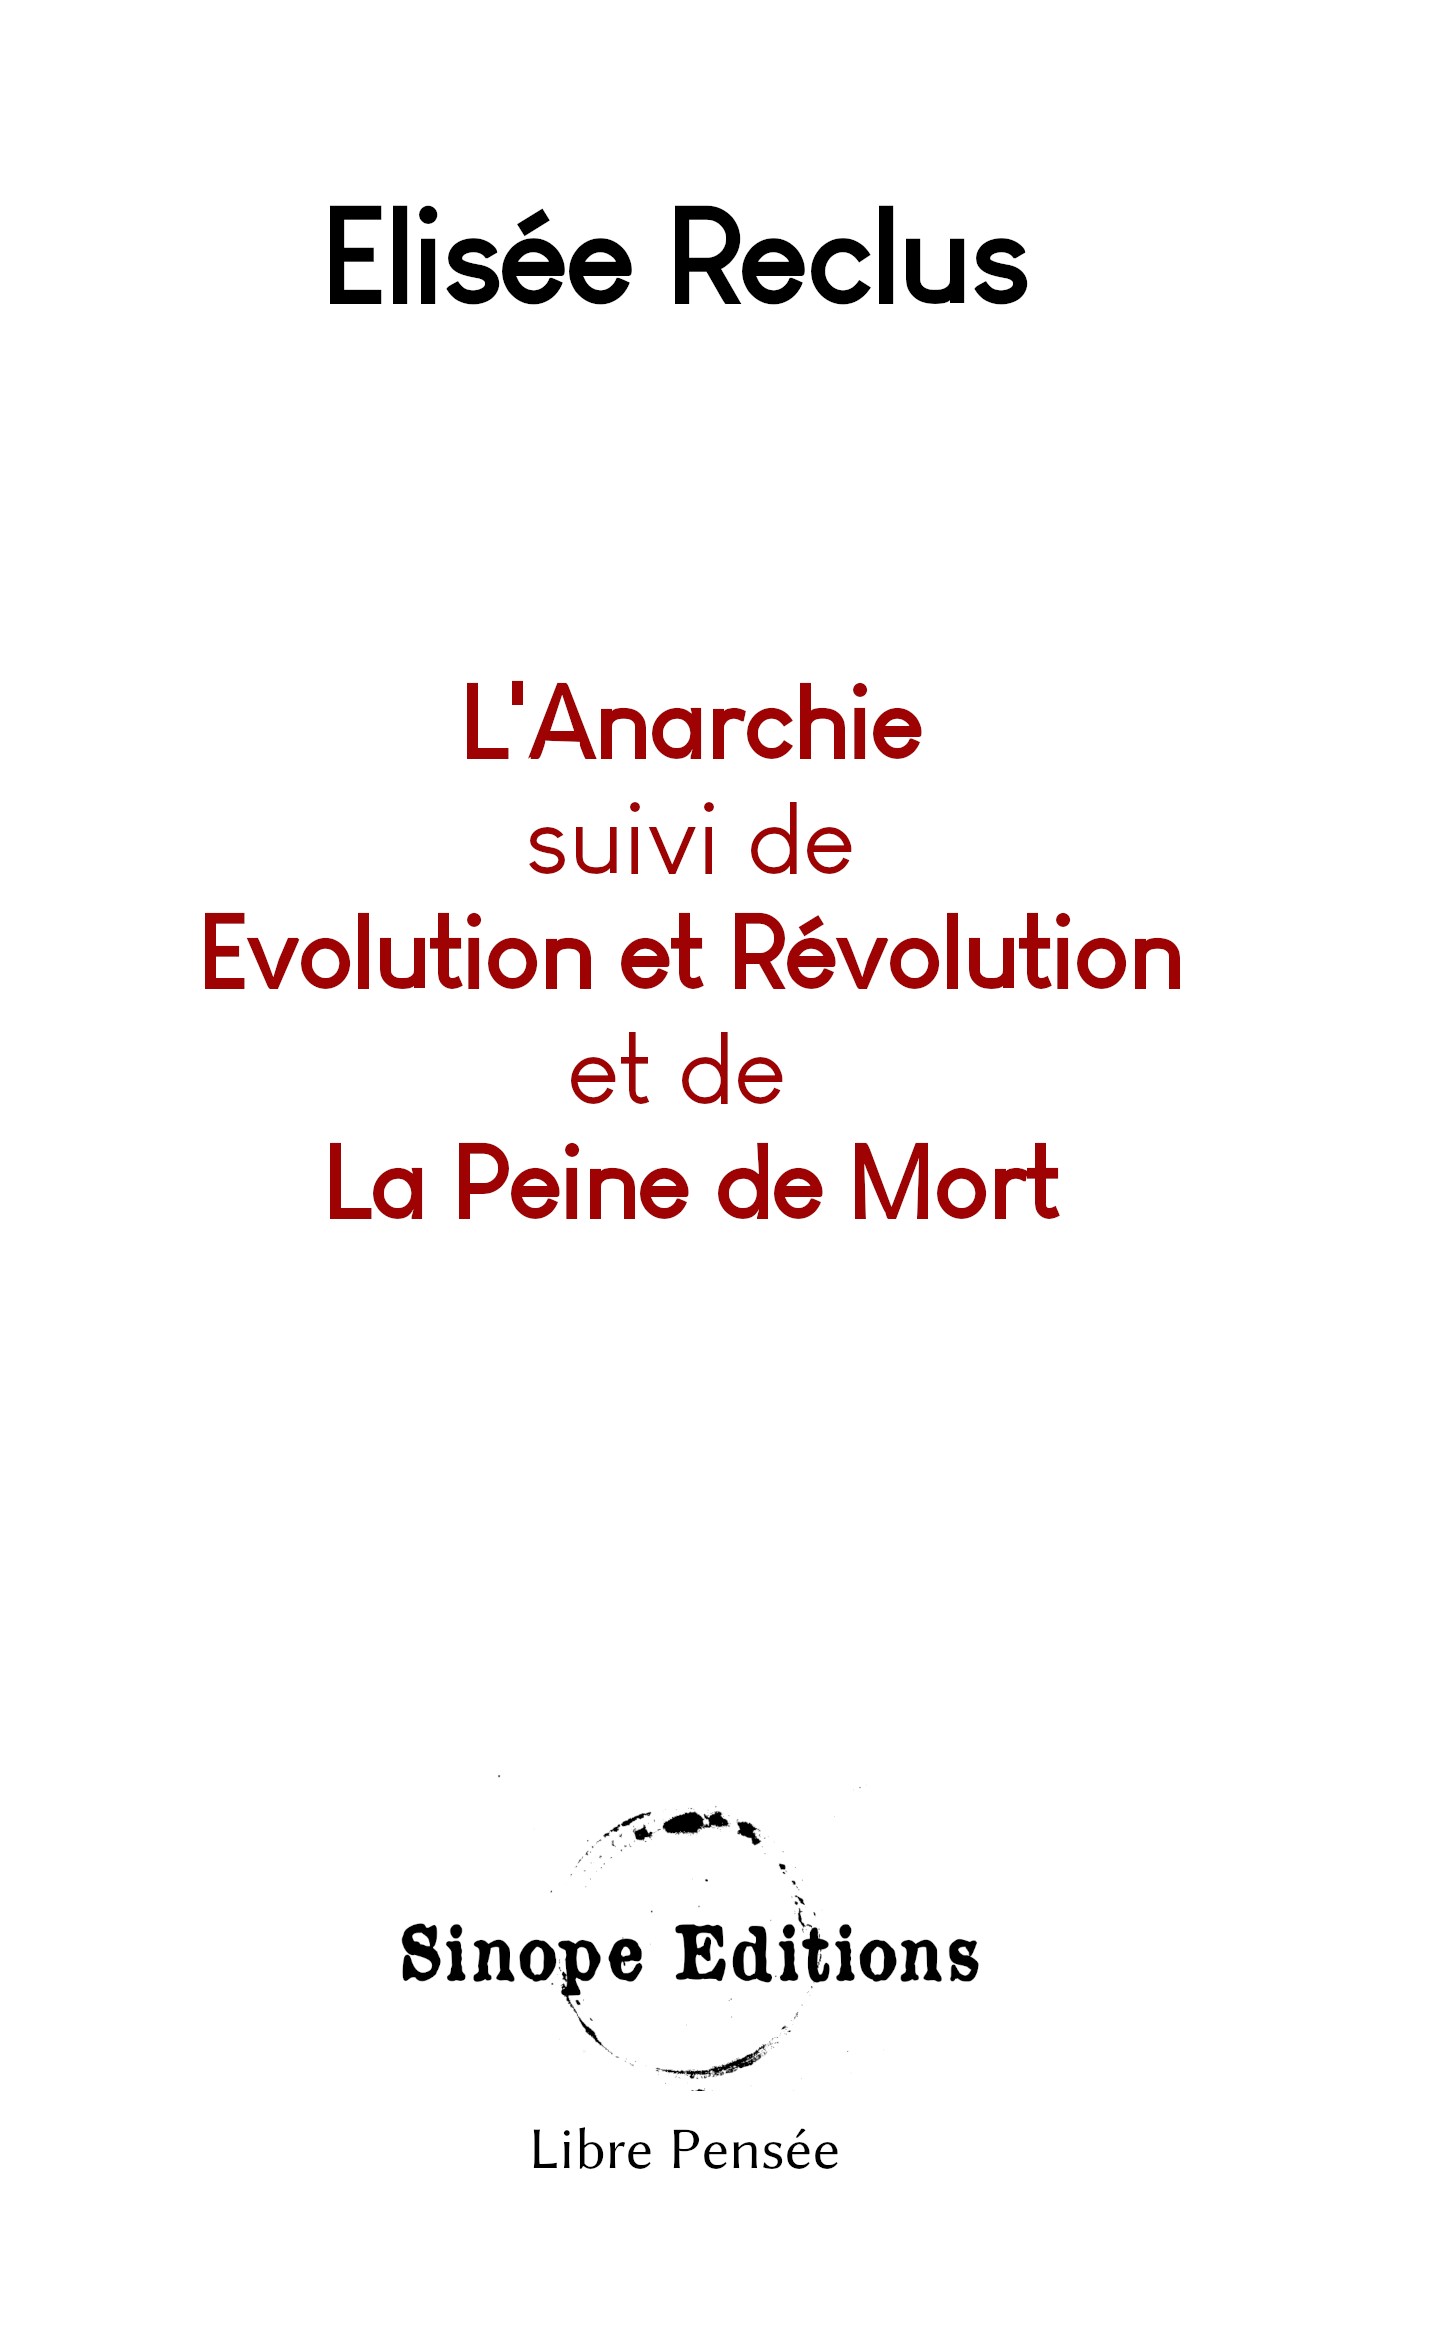 L’Anarchie, Révolution et Evolution et La Peine de Mort, de Elisée Reclus